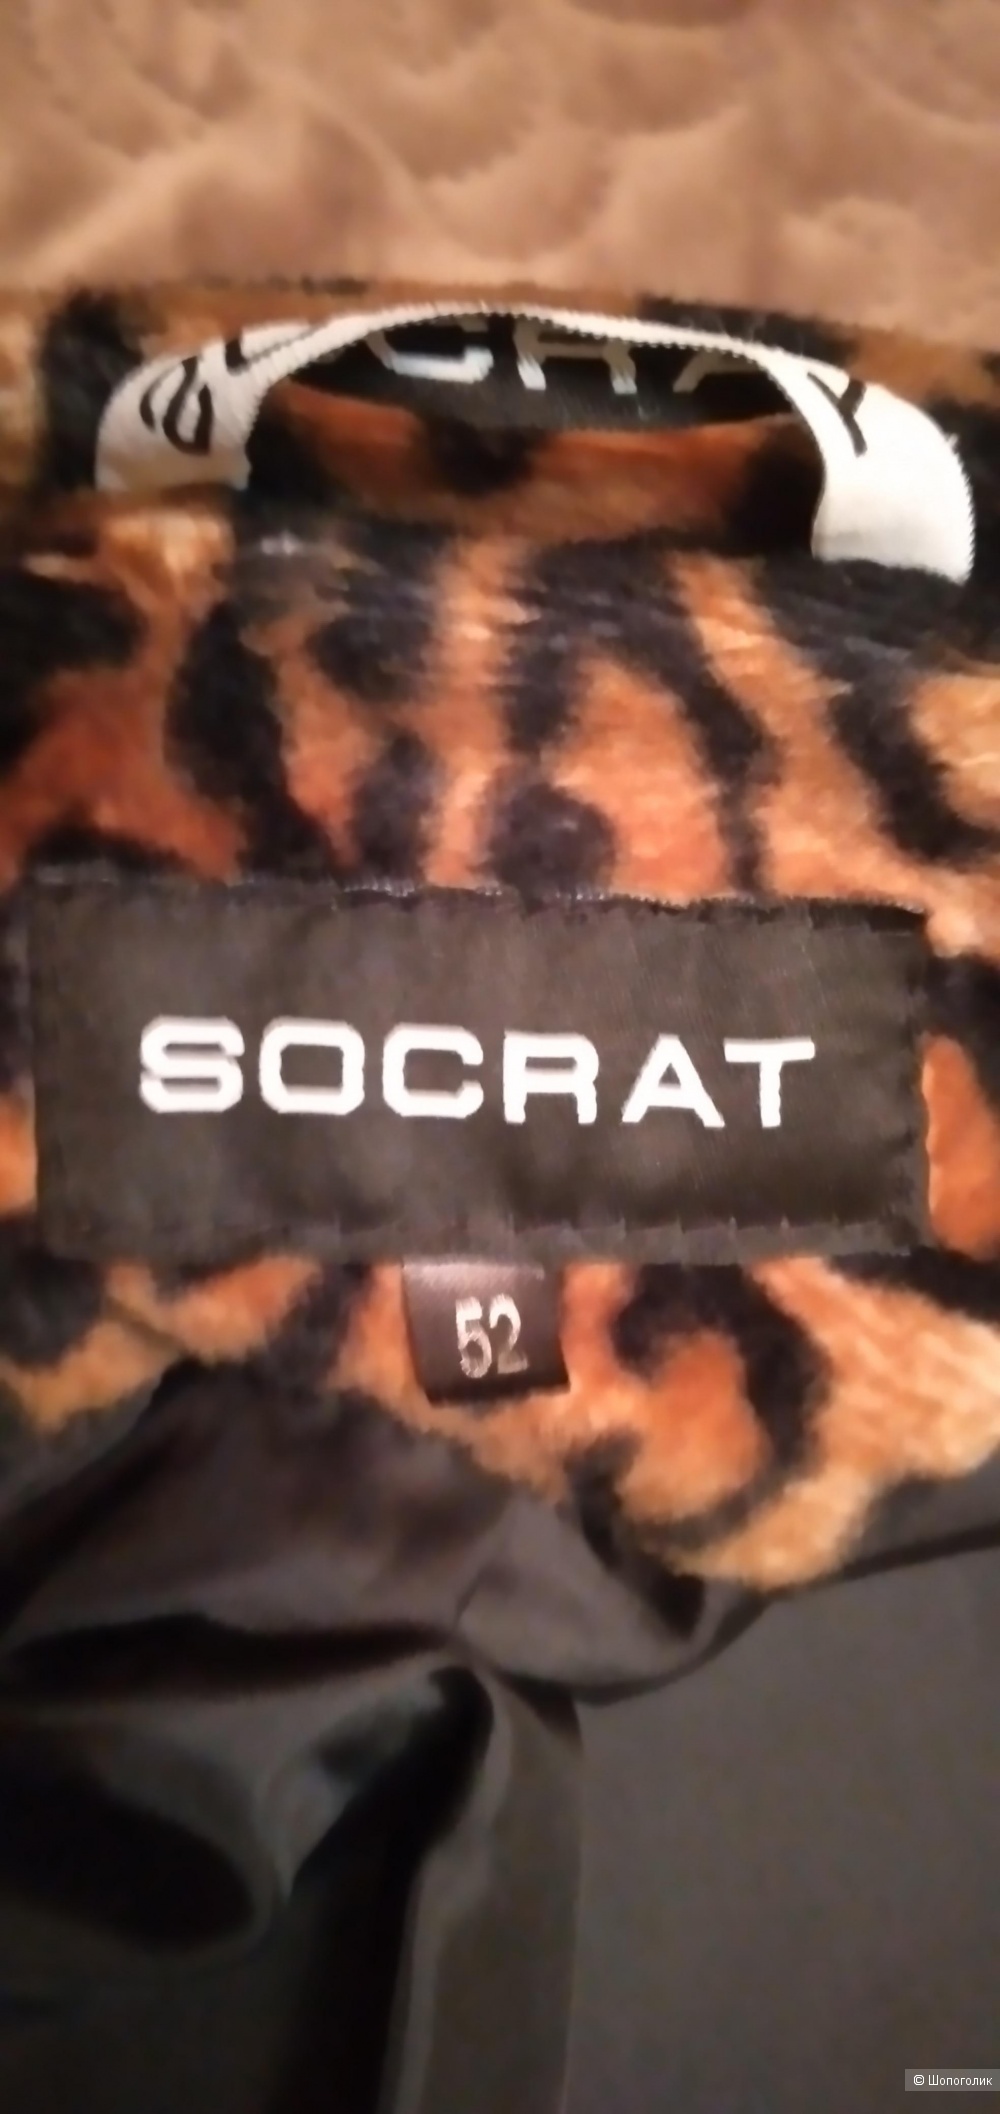 Пальто SOCRAT 52 размер